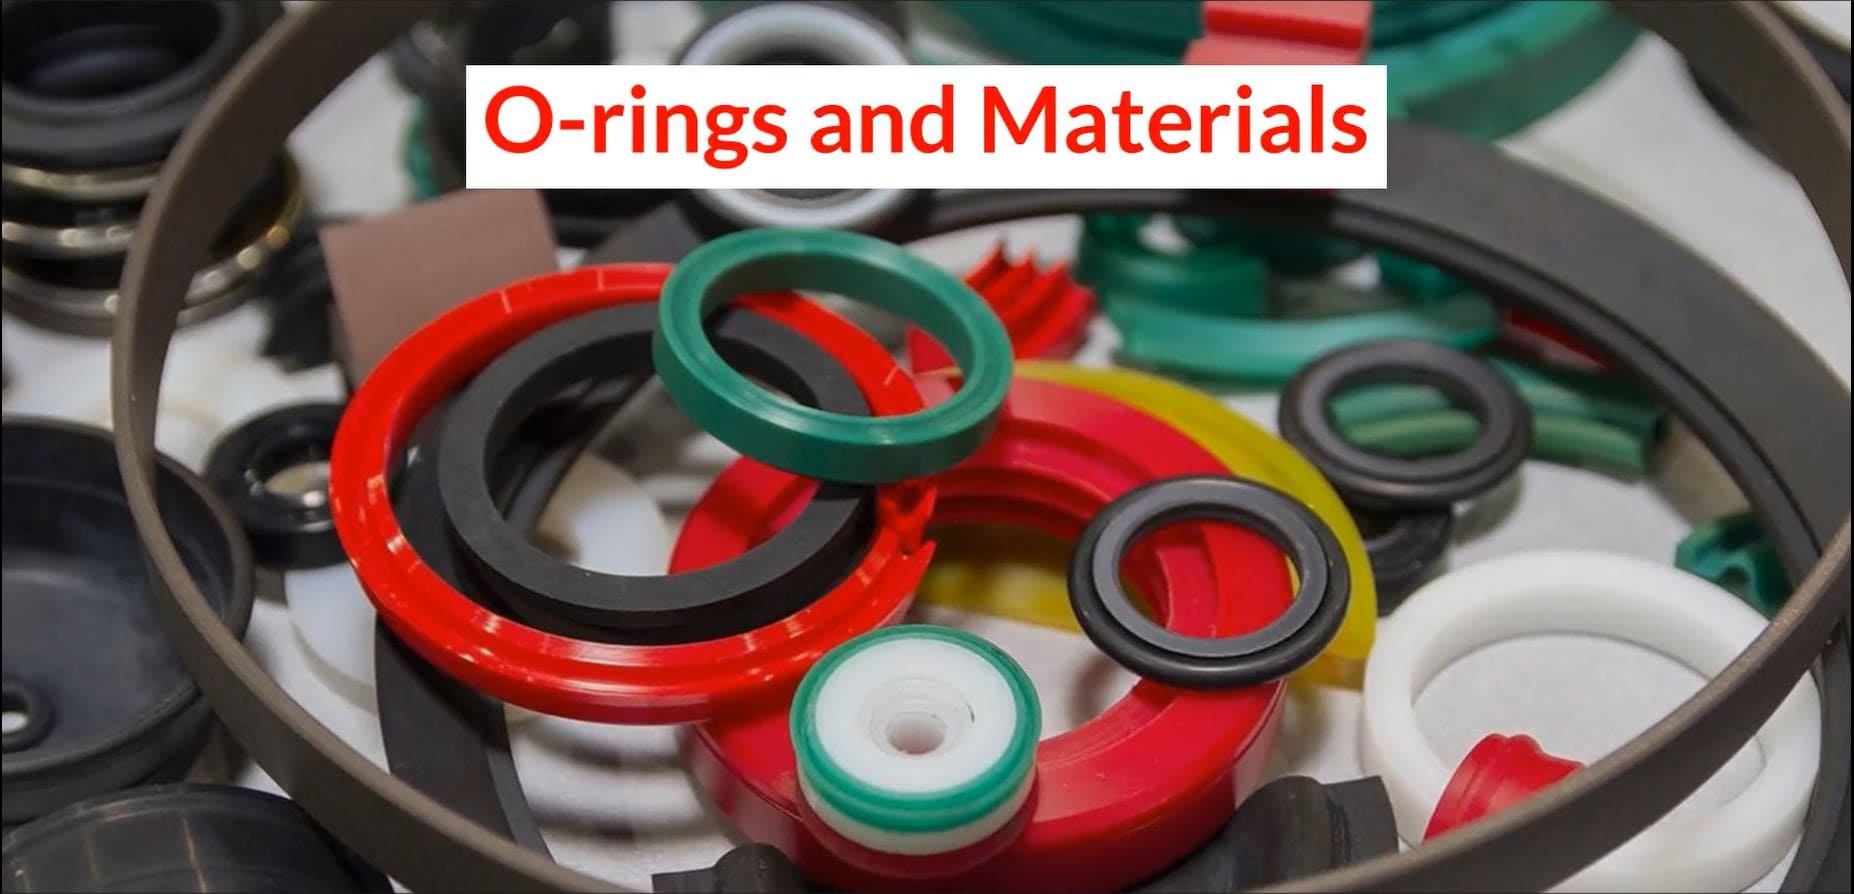 O-rings and Materials